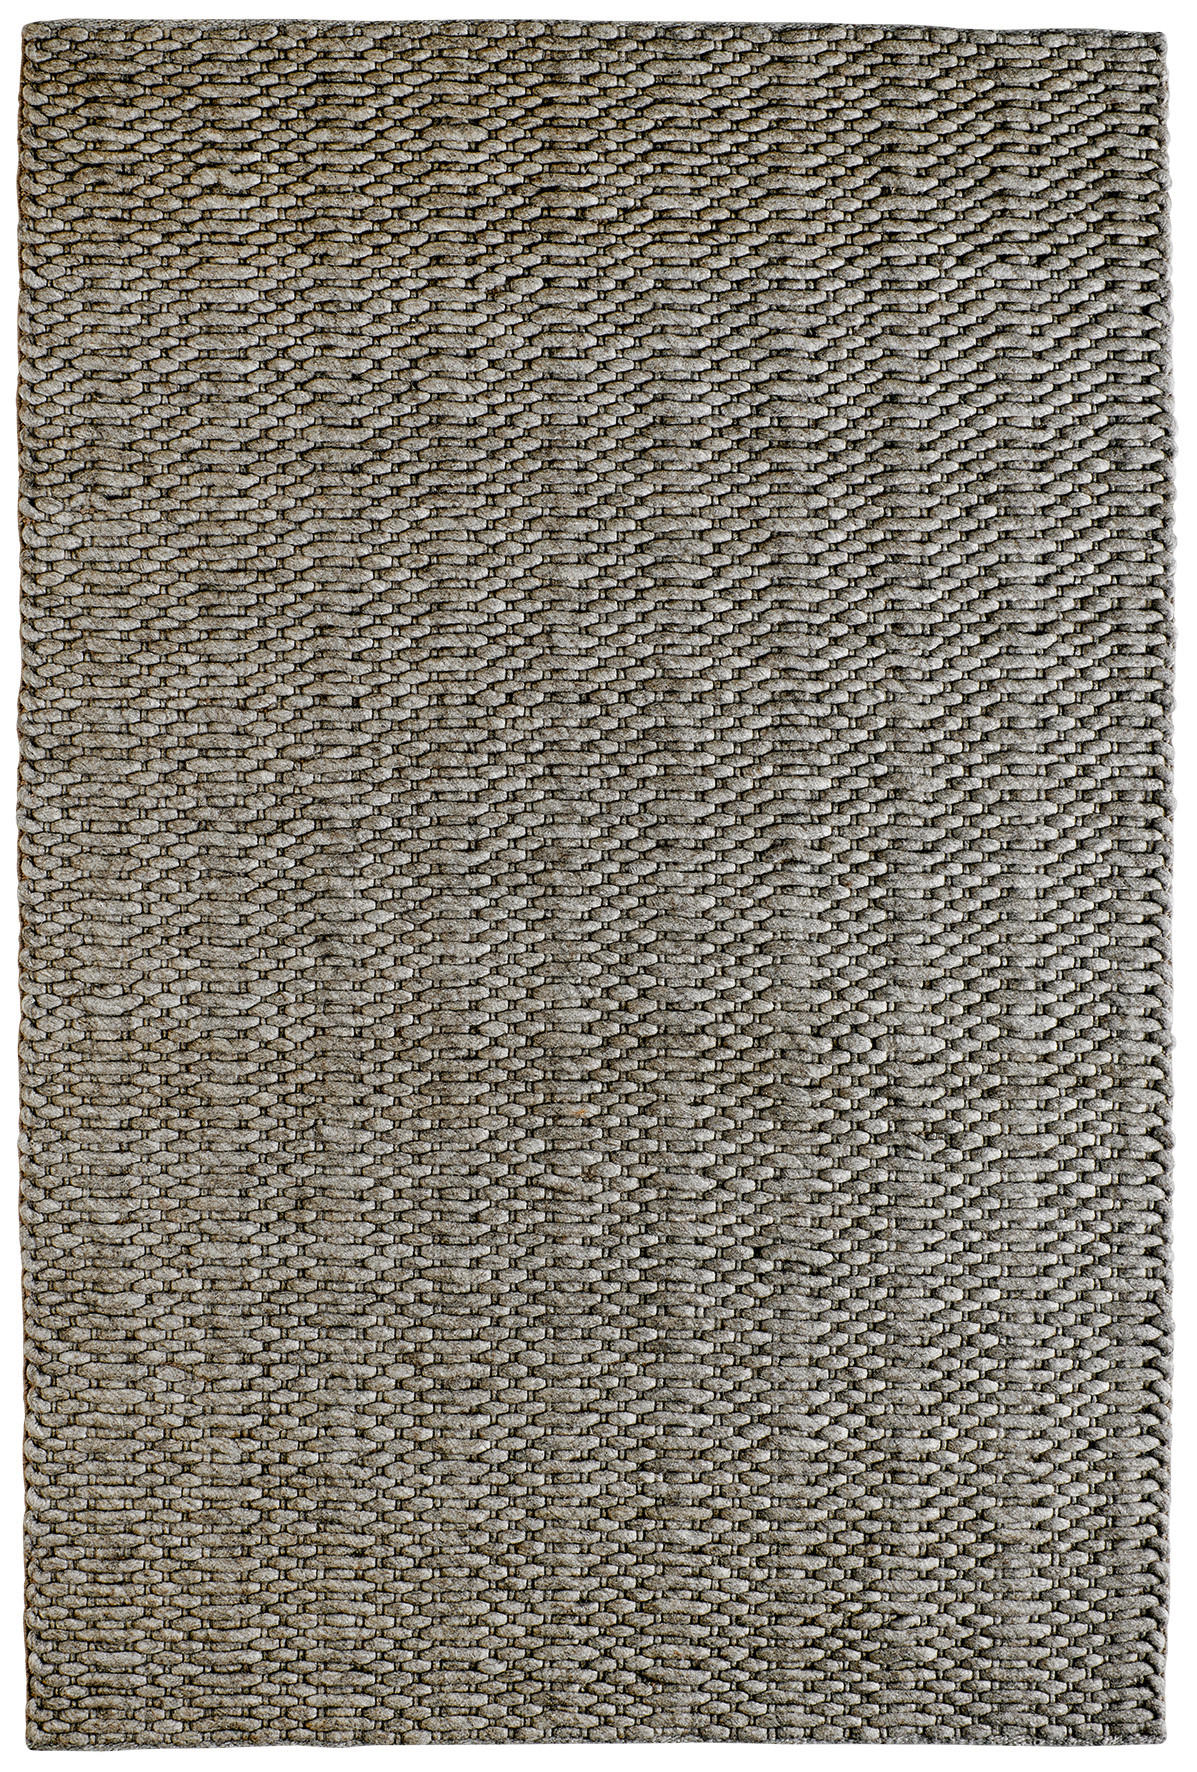 HANDWEBTEPPICH 140/200 cm  - Taupe, Basics, Textil (140/200cm) - Linea Natura